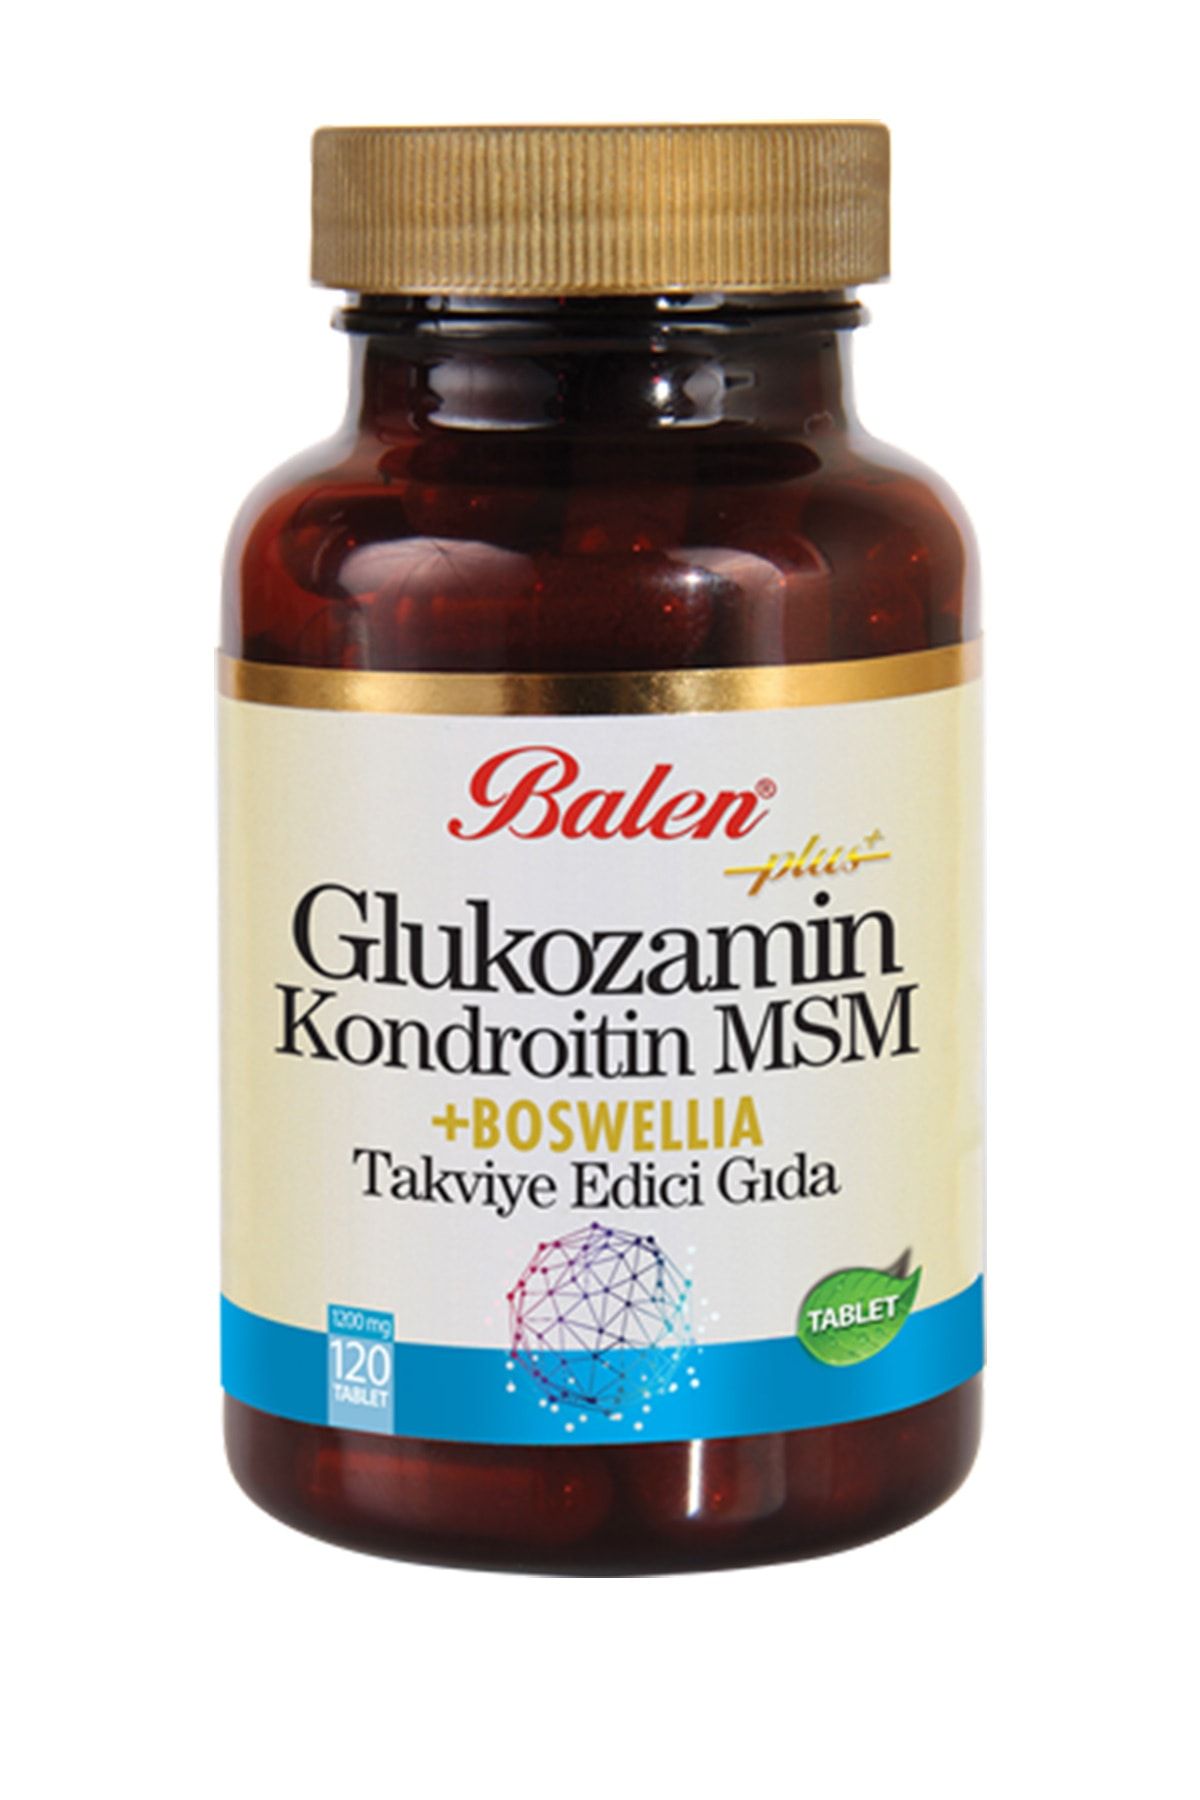 Balen Glukozamin & Kondroitin & Msm & Boswellia (AKGÜNLÜK) Tablet Takviye Edici Gıda 120 Tablet Glukosamin